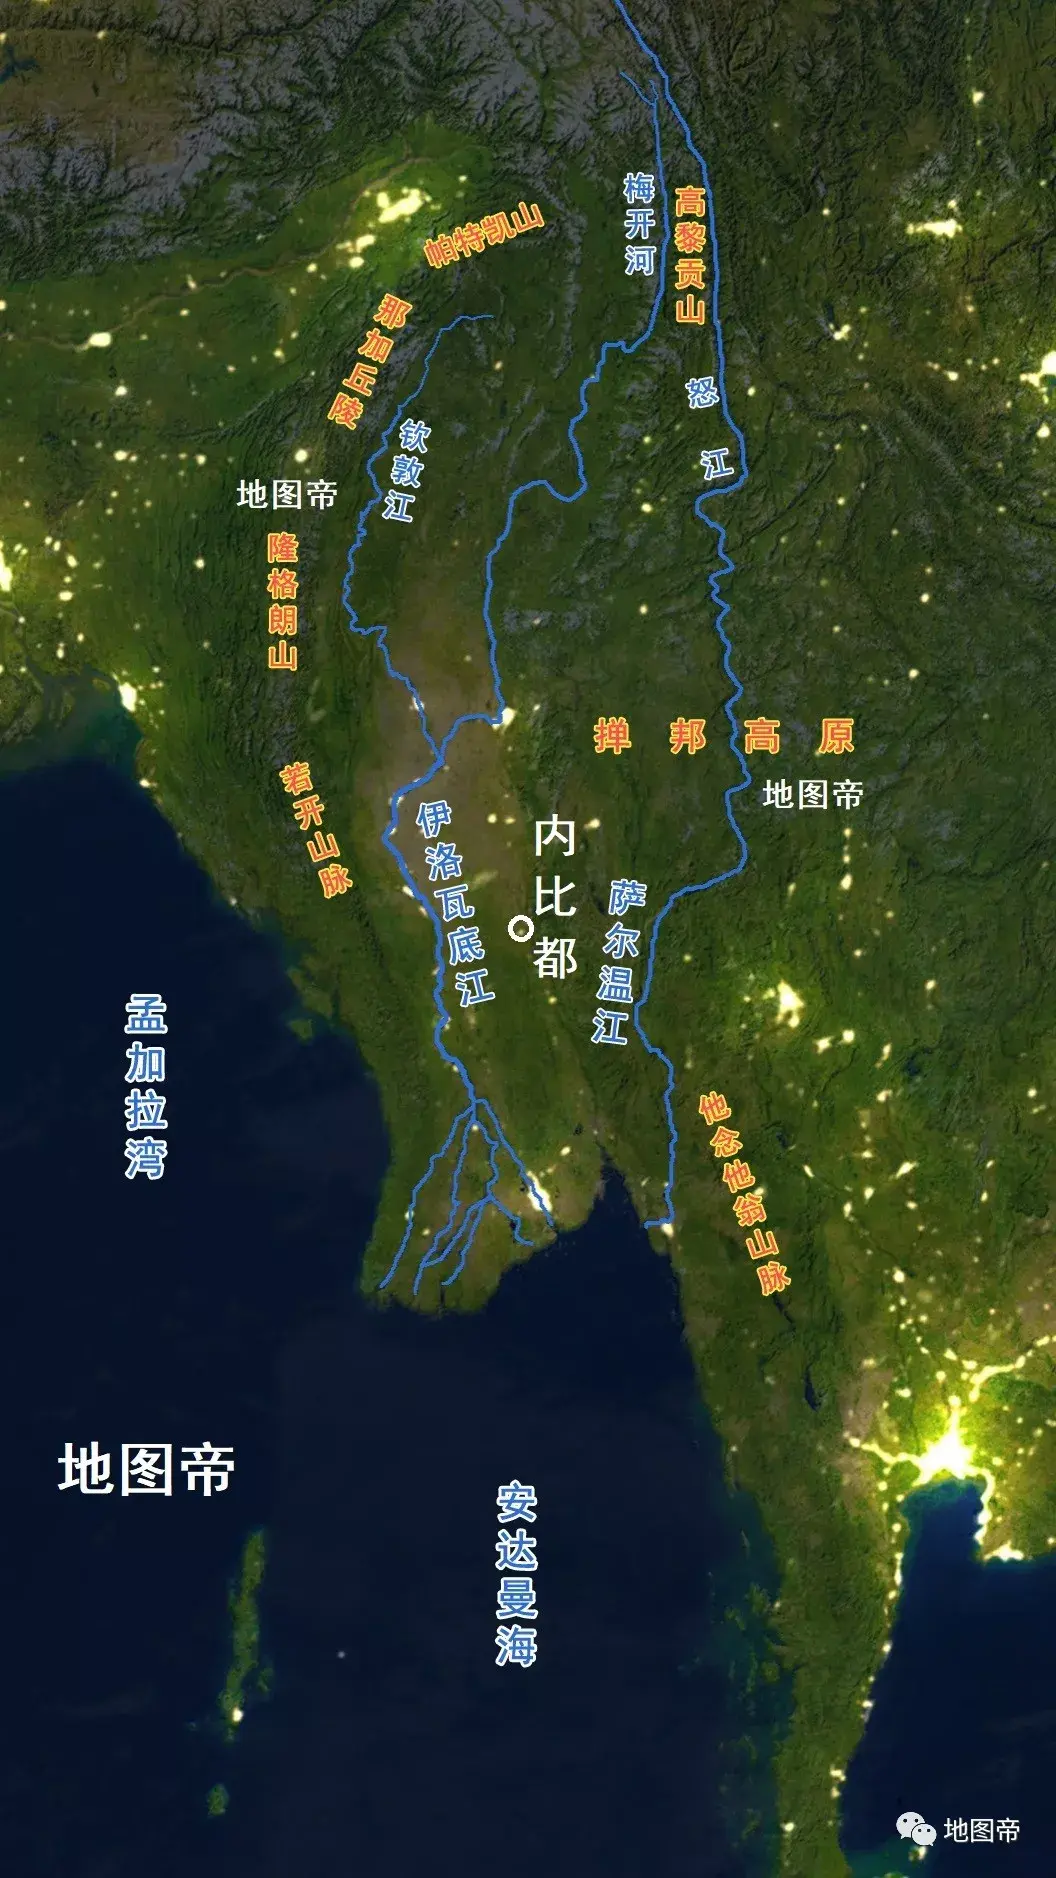 缅甸地势图 - 缅甸地图 - 地理教师网